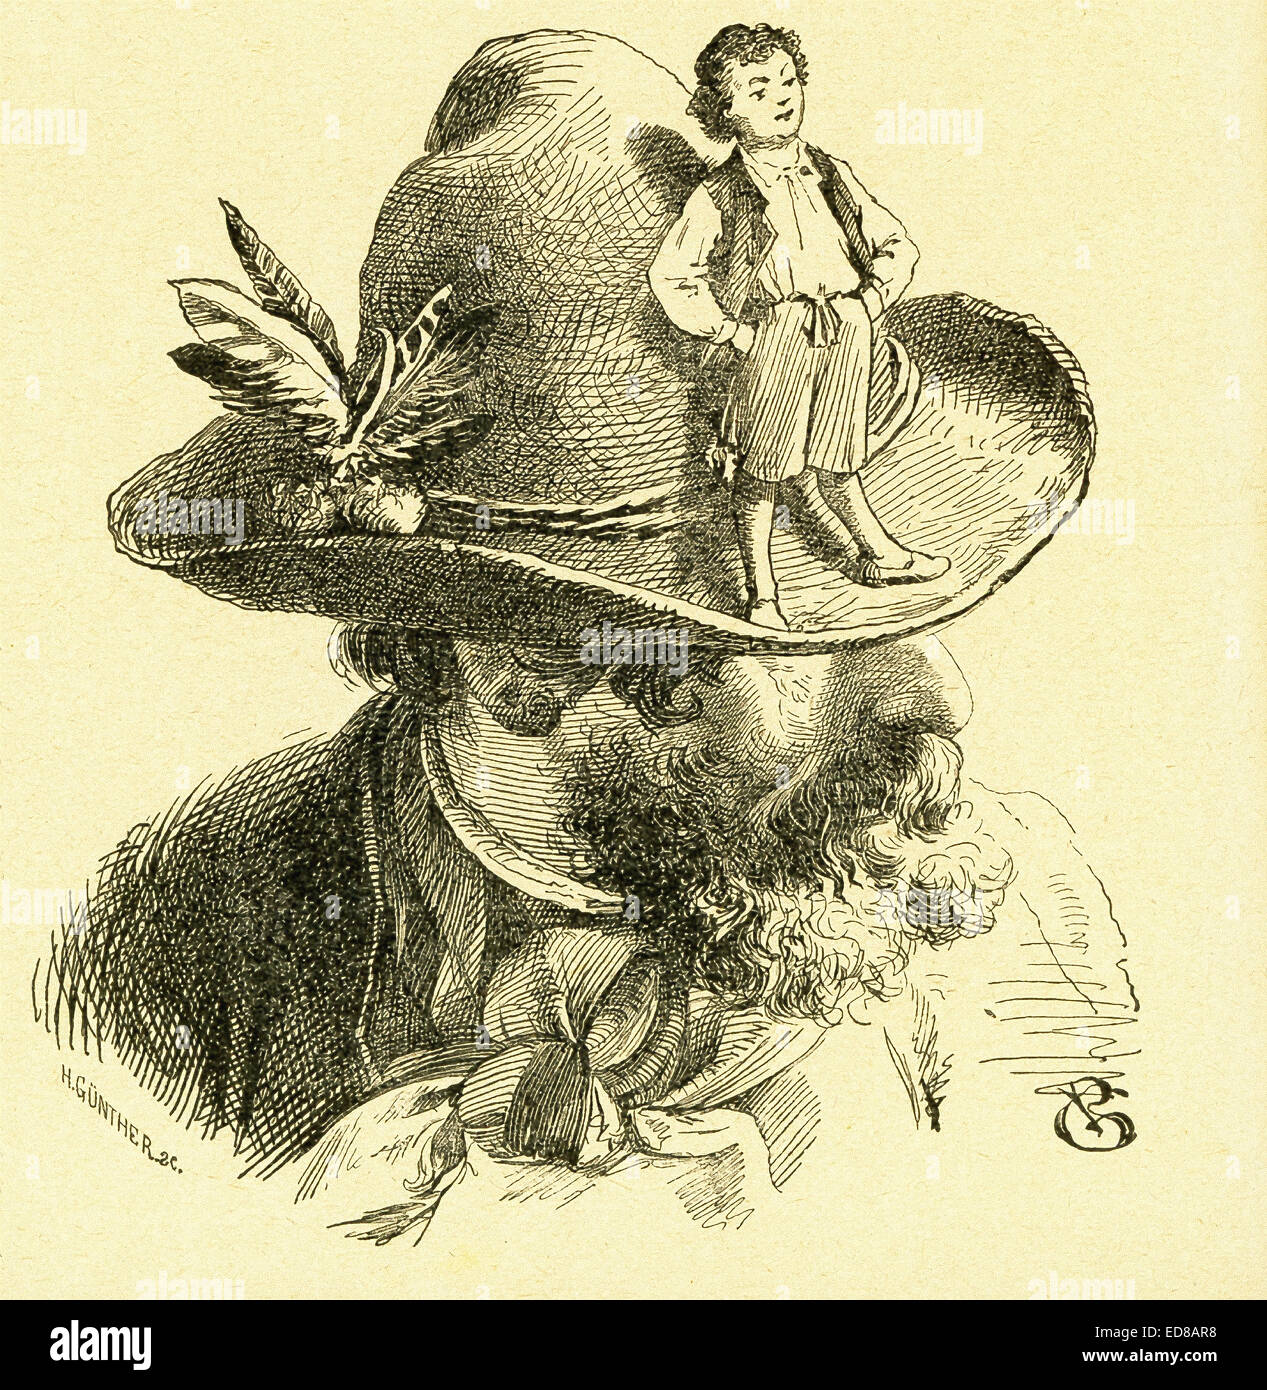 Nel 1812, i fratelli Grimm, Jacob e Wilhelm, pubblicato i Bambini e famiglia racconti, una collezione tedesco favole. Questa illustrazione accompagnato il racconto "Tom Thumb' e mostra Tom seduto sul bordo del cappello di uno degli stranieri che hanno acquistato himÑat Tom's insistenceÑform i suoi genitori. Questa immagine è da Grimms Eventyr (Grimm di favole) da Carl Ewald, pubblicato nel 1922. Il frontespizio è le illustrazioni da Philip Grot Johann e R. Leinweber. Johann era un noto illustratore tedesco e ha fatto di pezzi di Goethe, ma ha considerato i suoi pezzi per Grimm's tales molto importante. Foto Stock